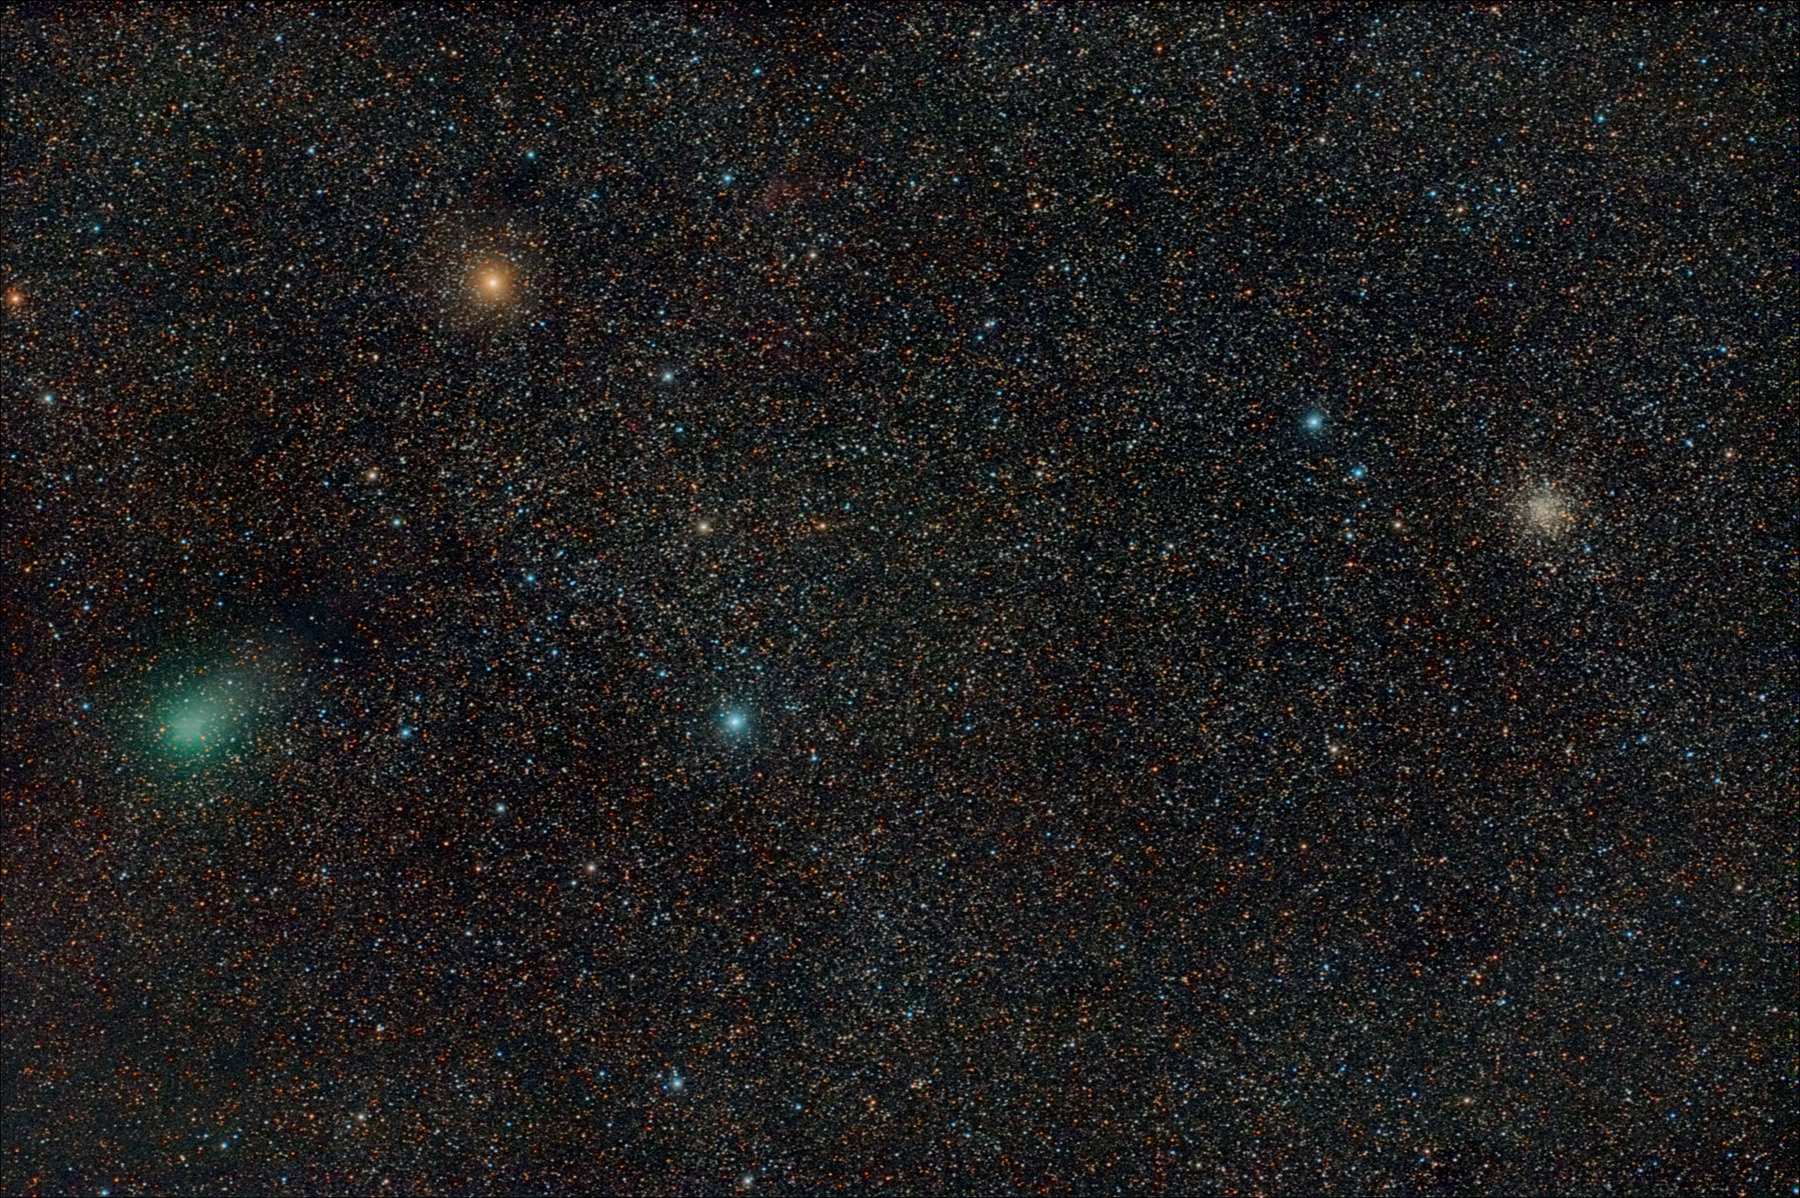 Cometa C/2009 P1 Garradd amb el cúmul M71